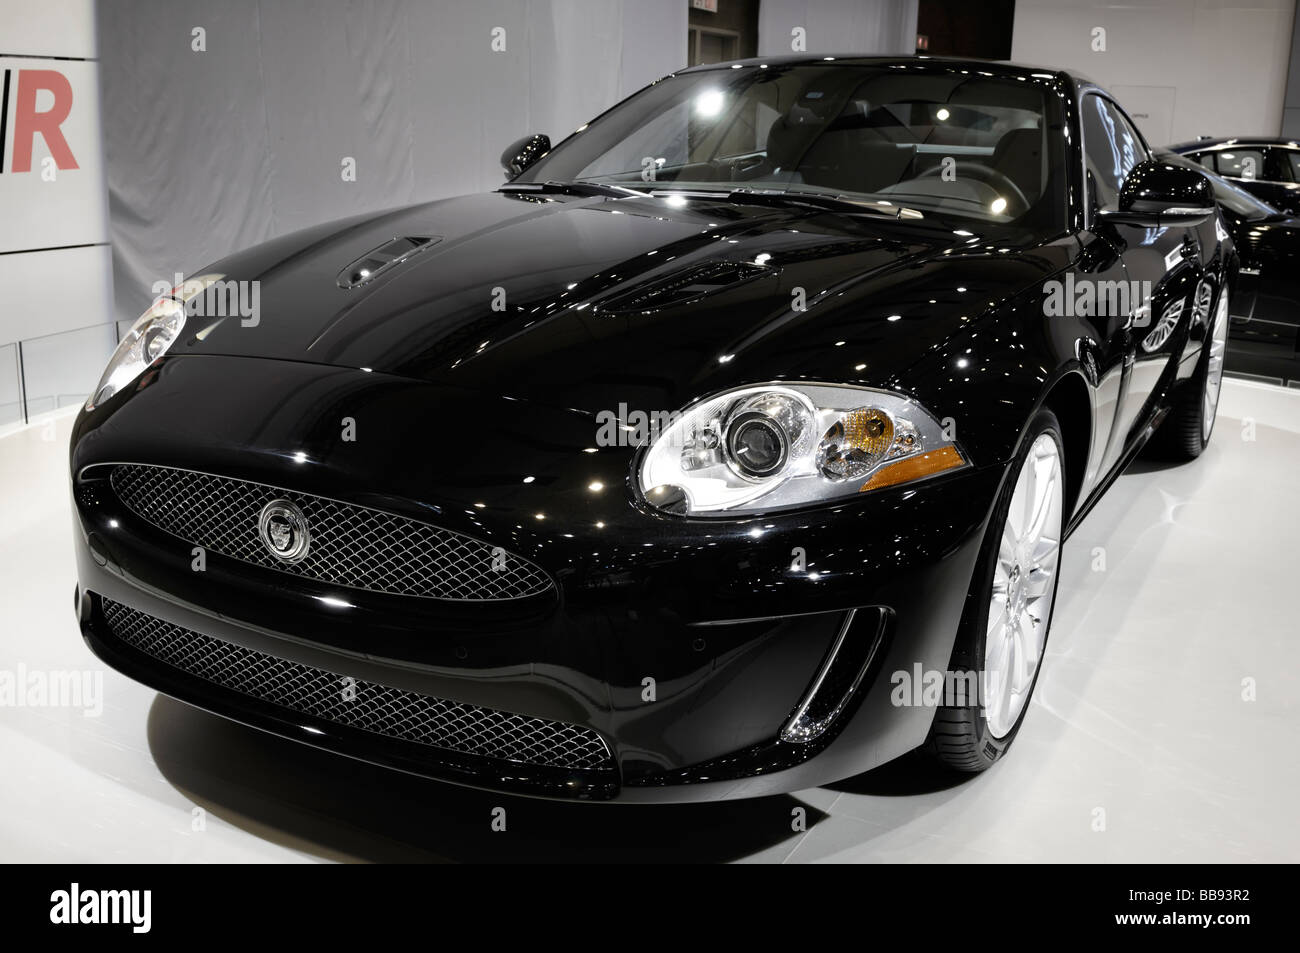 Black 2009 Jaguar XKR grand tourer Stock Photo